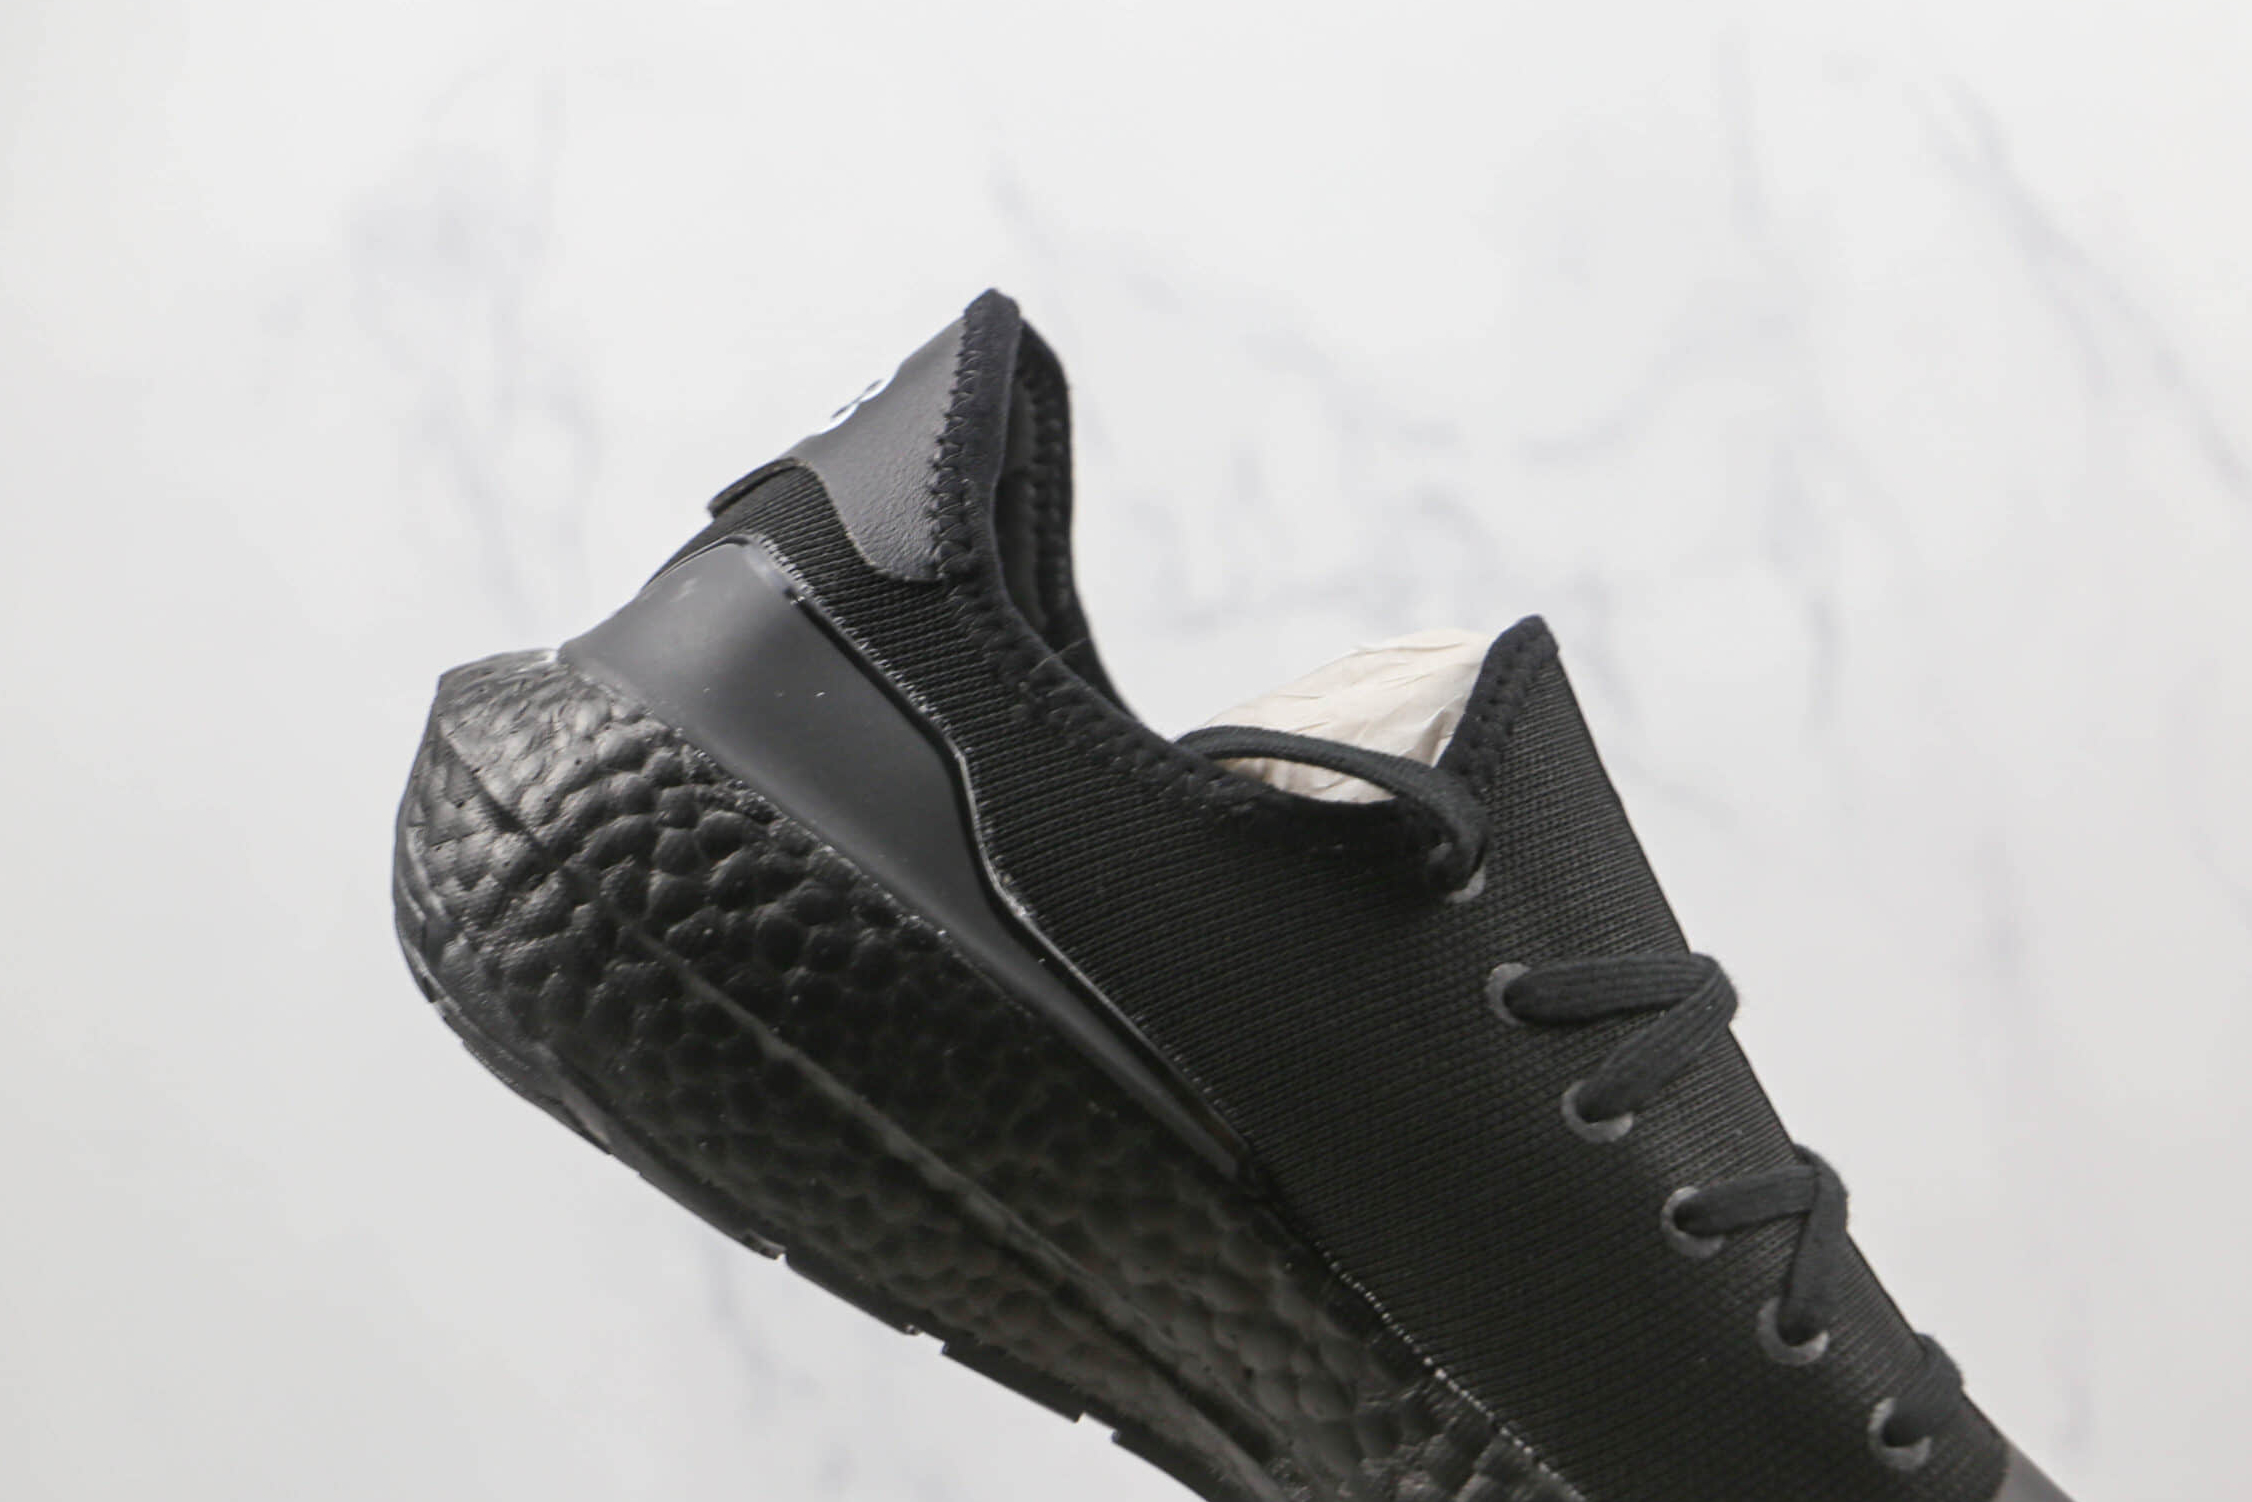 Adidas Y-3 UltraBoost 21 'Black' GZ9133 - Stylish & High-performance Footwear